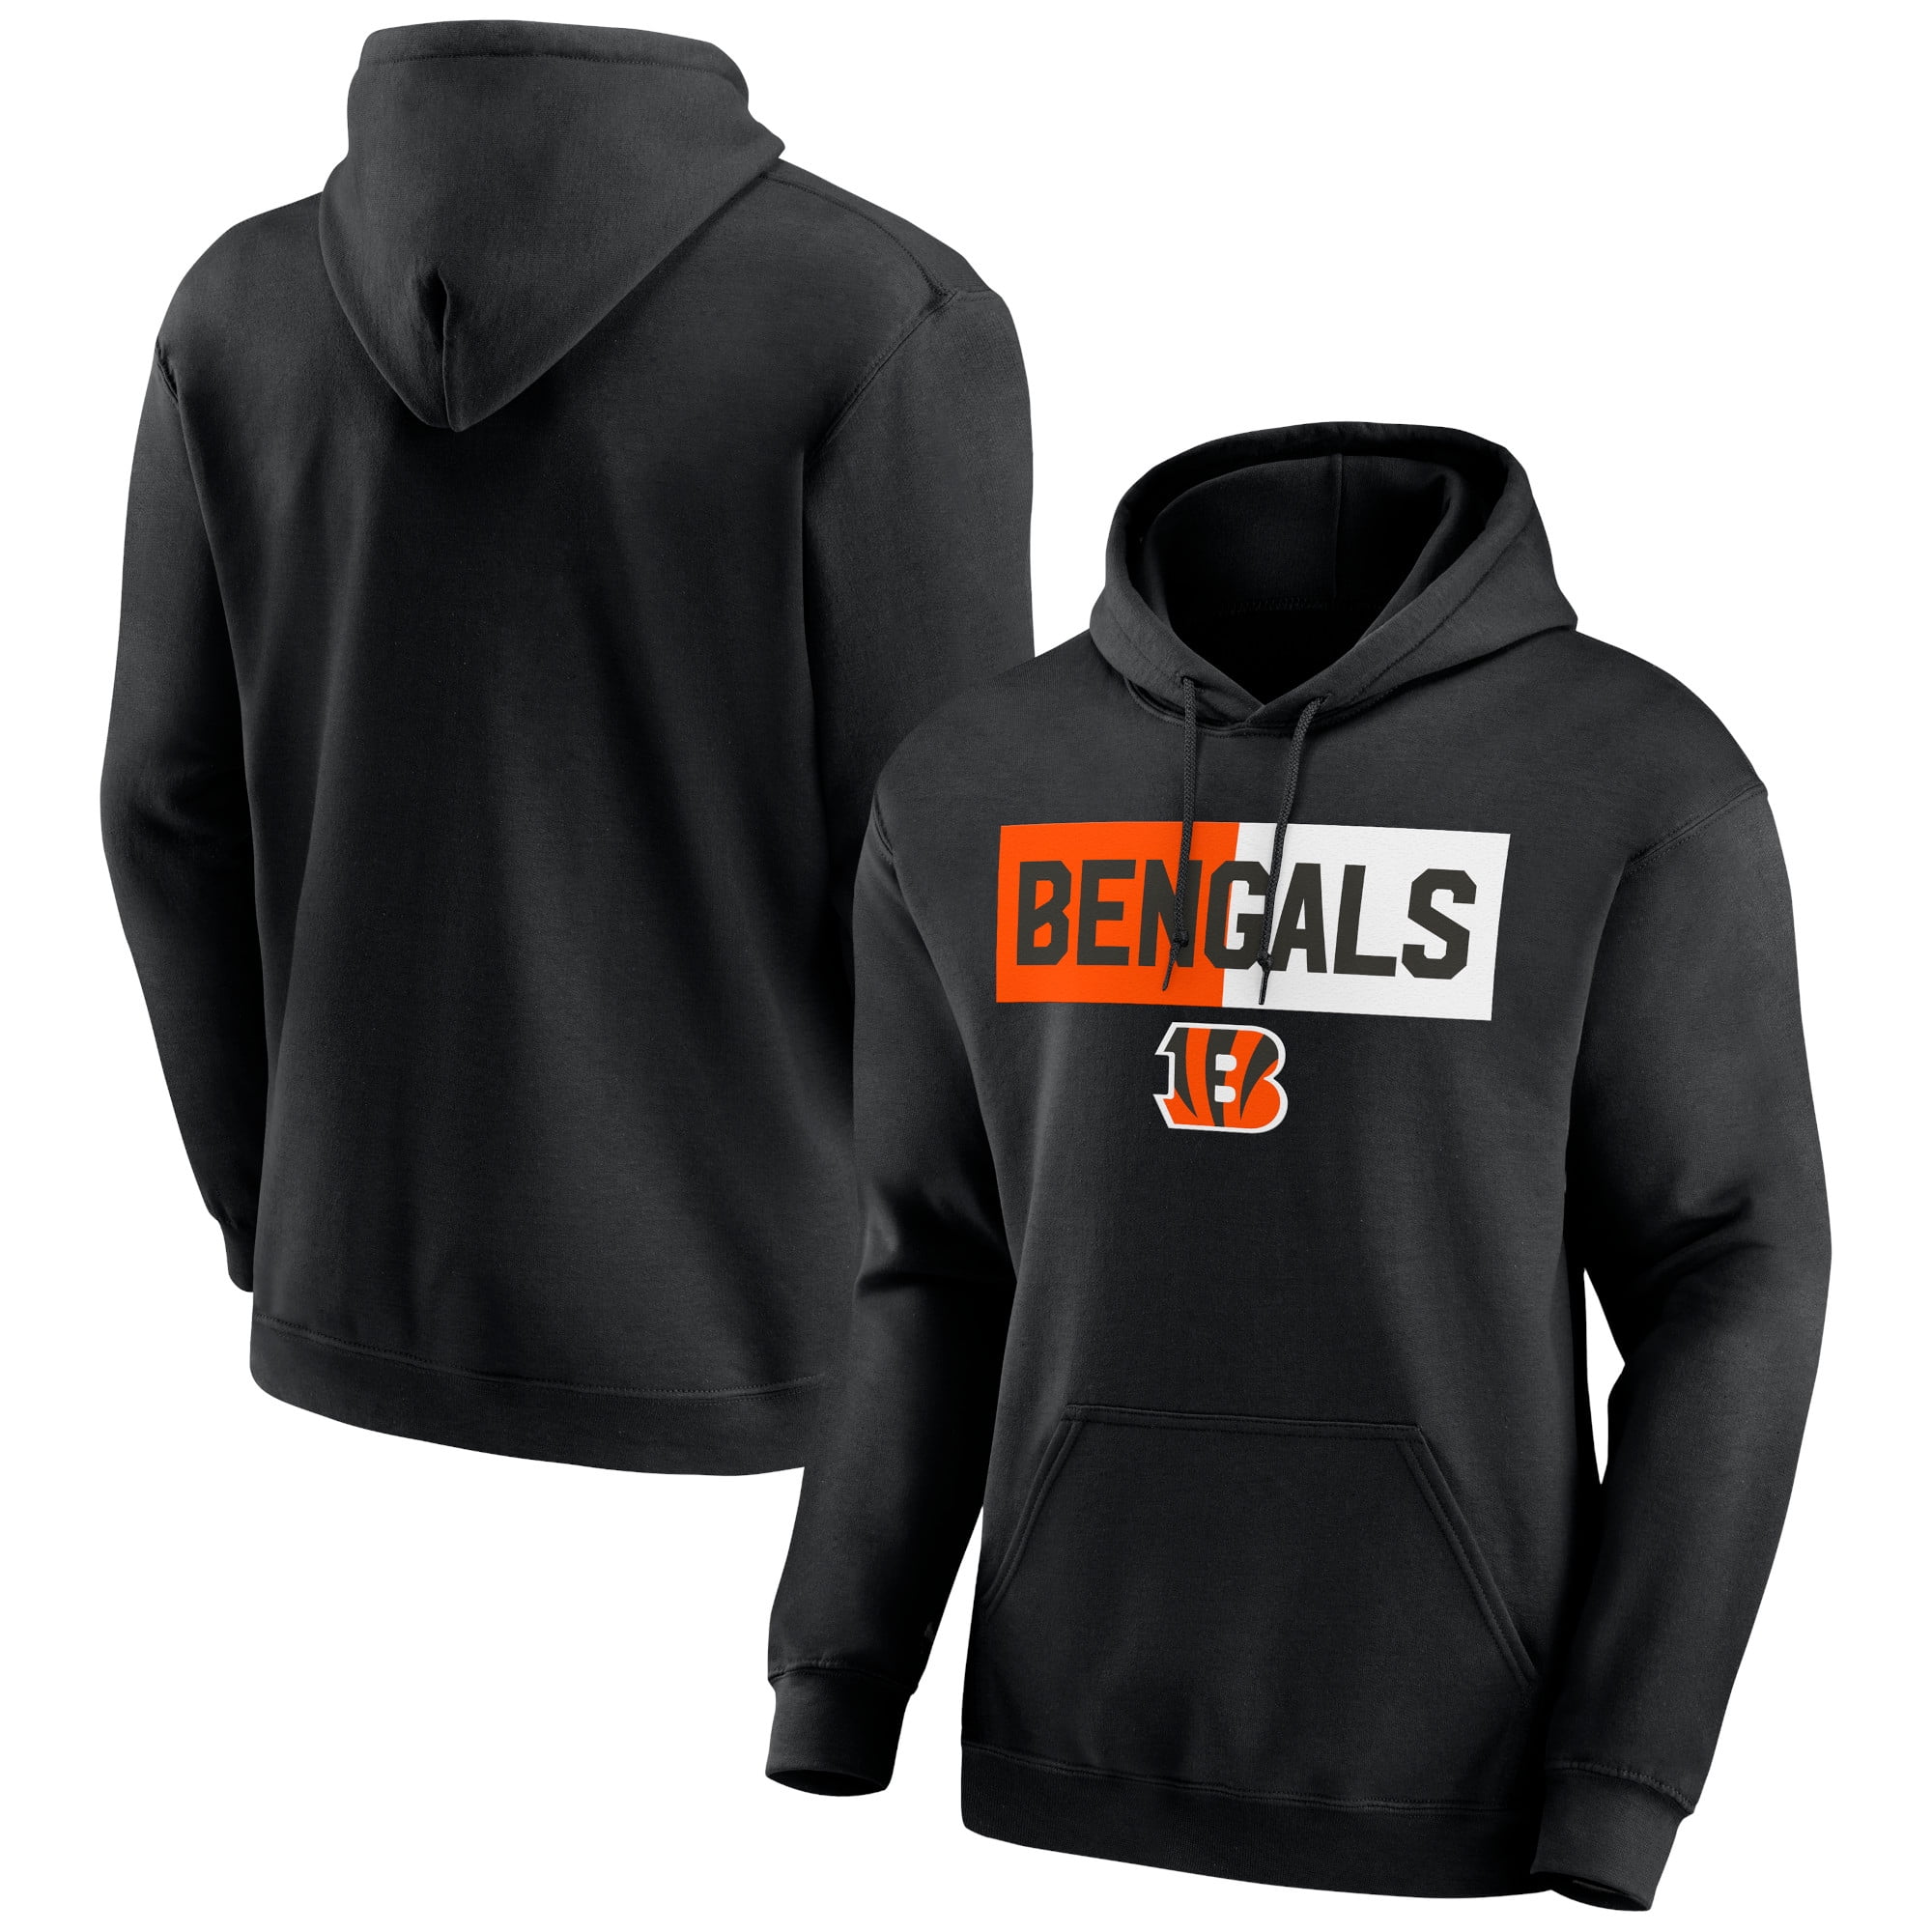 Cincinnati Bengals Cropped Zip-Up Sweatshirt